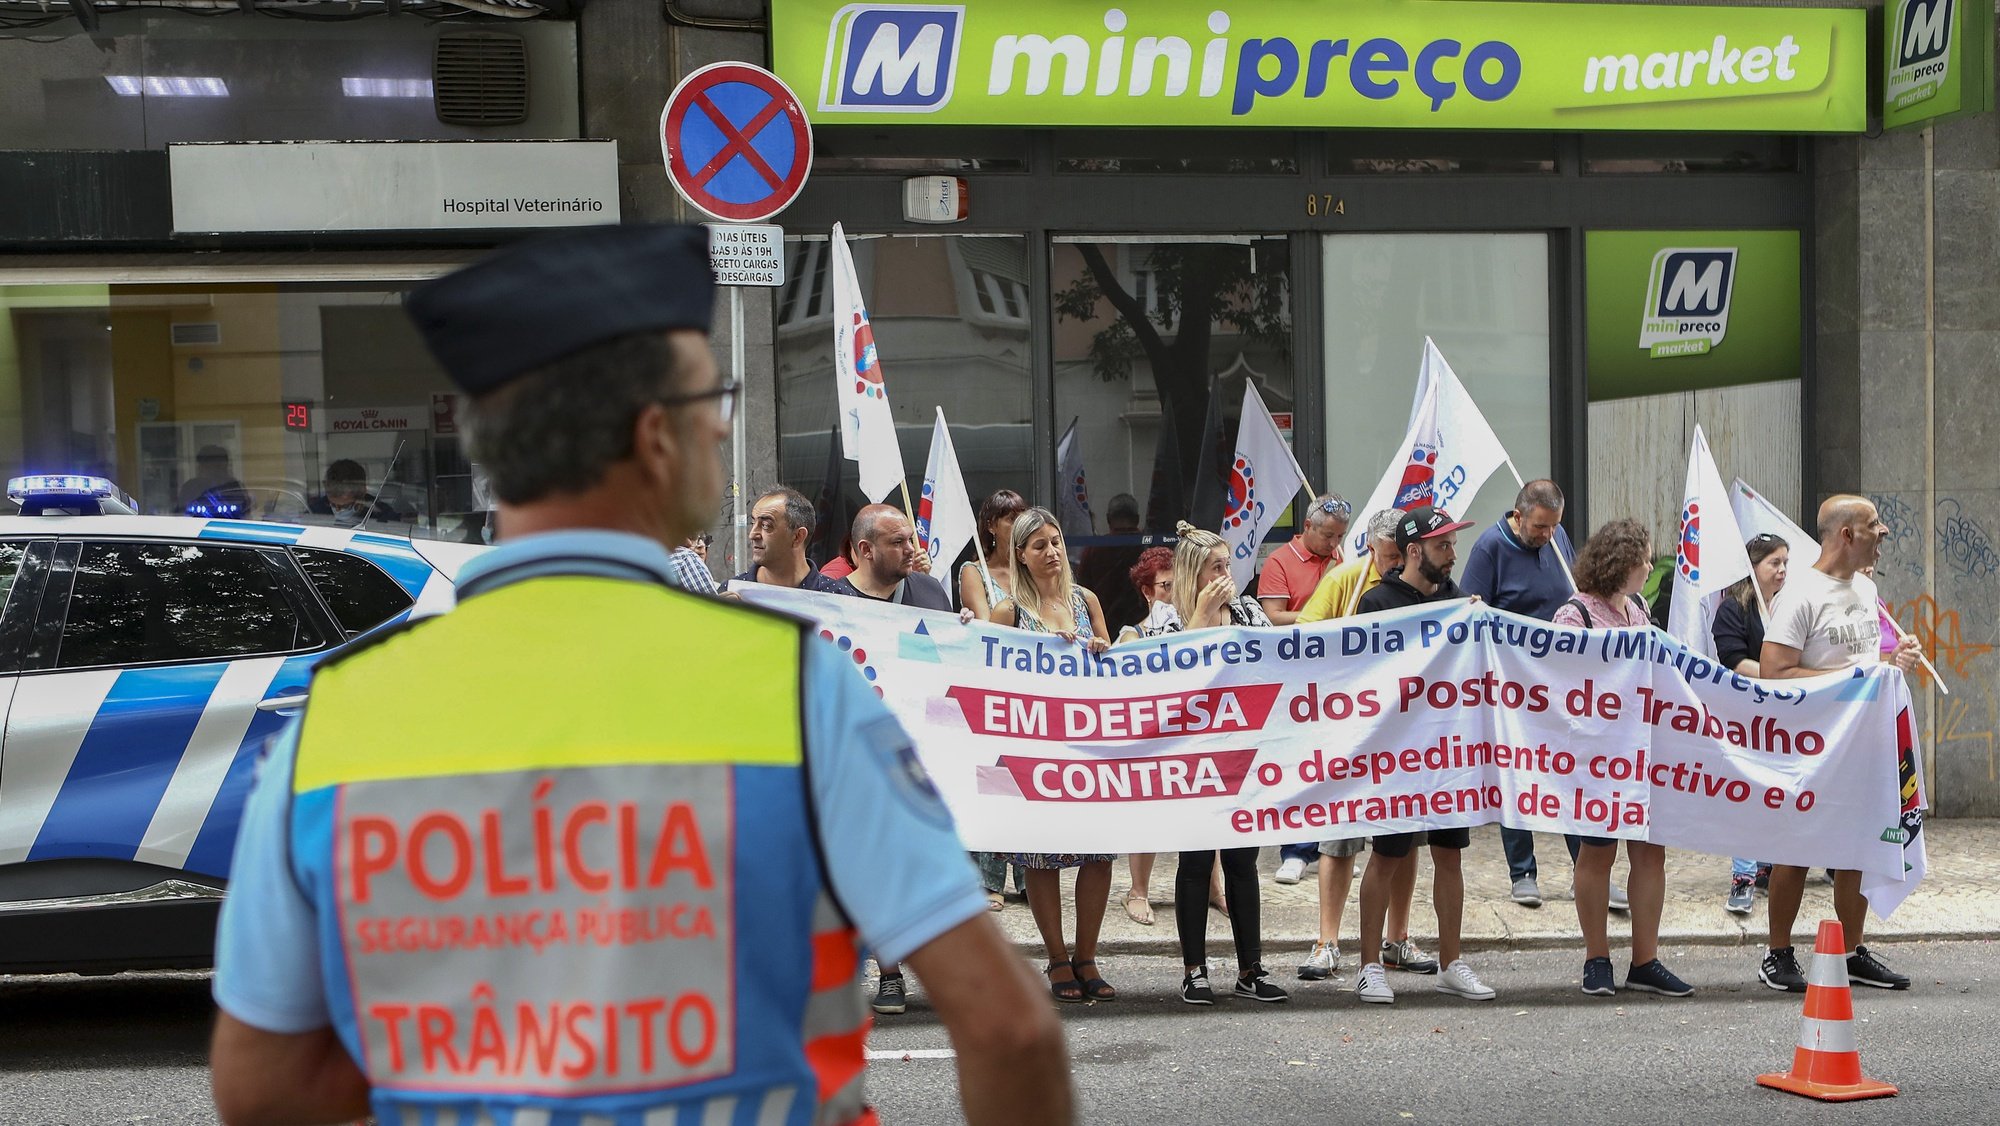 Trabalhadores do Dia Portugal (Minipreço) protestam durante uma concentração em Lisboa convocada pelo Sindicato dos Trabalhadores do Comércio, Escritórios e Serviços de Portugal contra o despedimento coletivo de 181 trabalhadores e o encerramento de 25 locais de trabalho, 04 de agosto de 2022. ANTÓNIO PEDRO SANTOS/LUSA